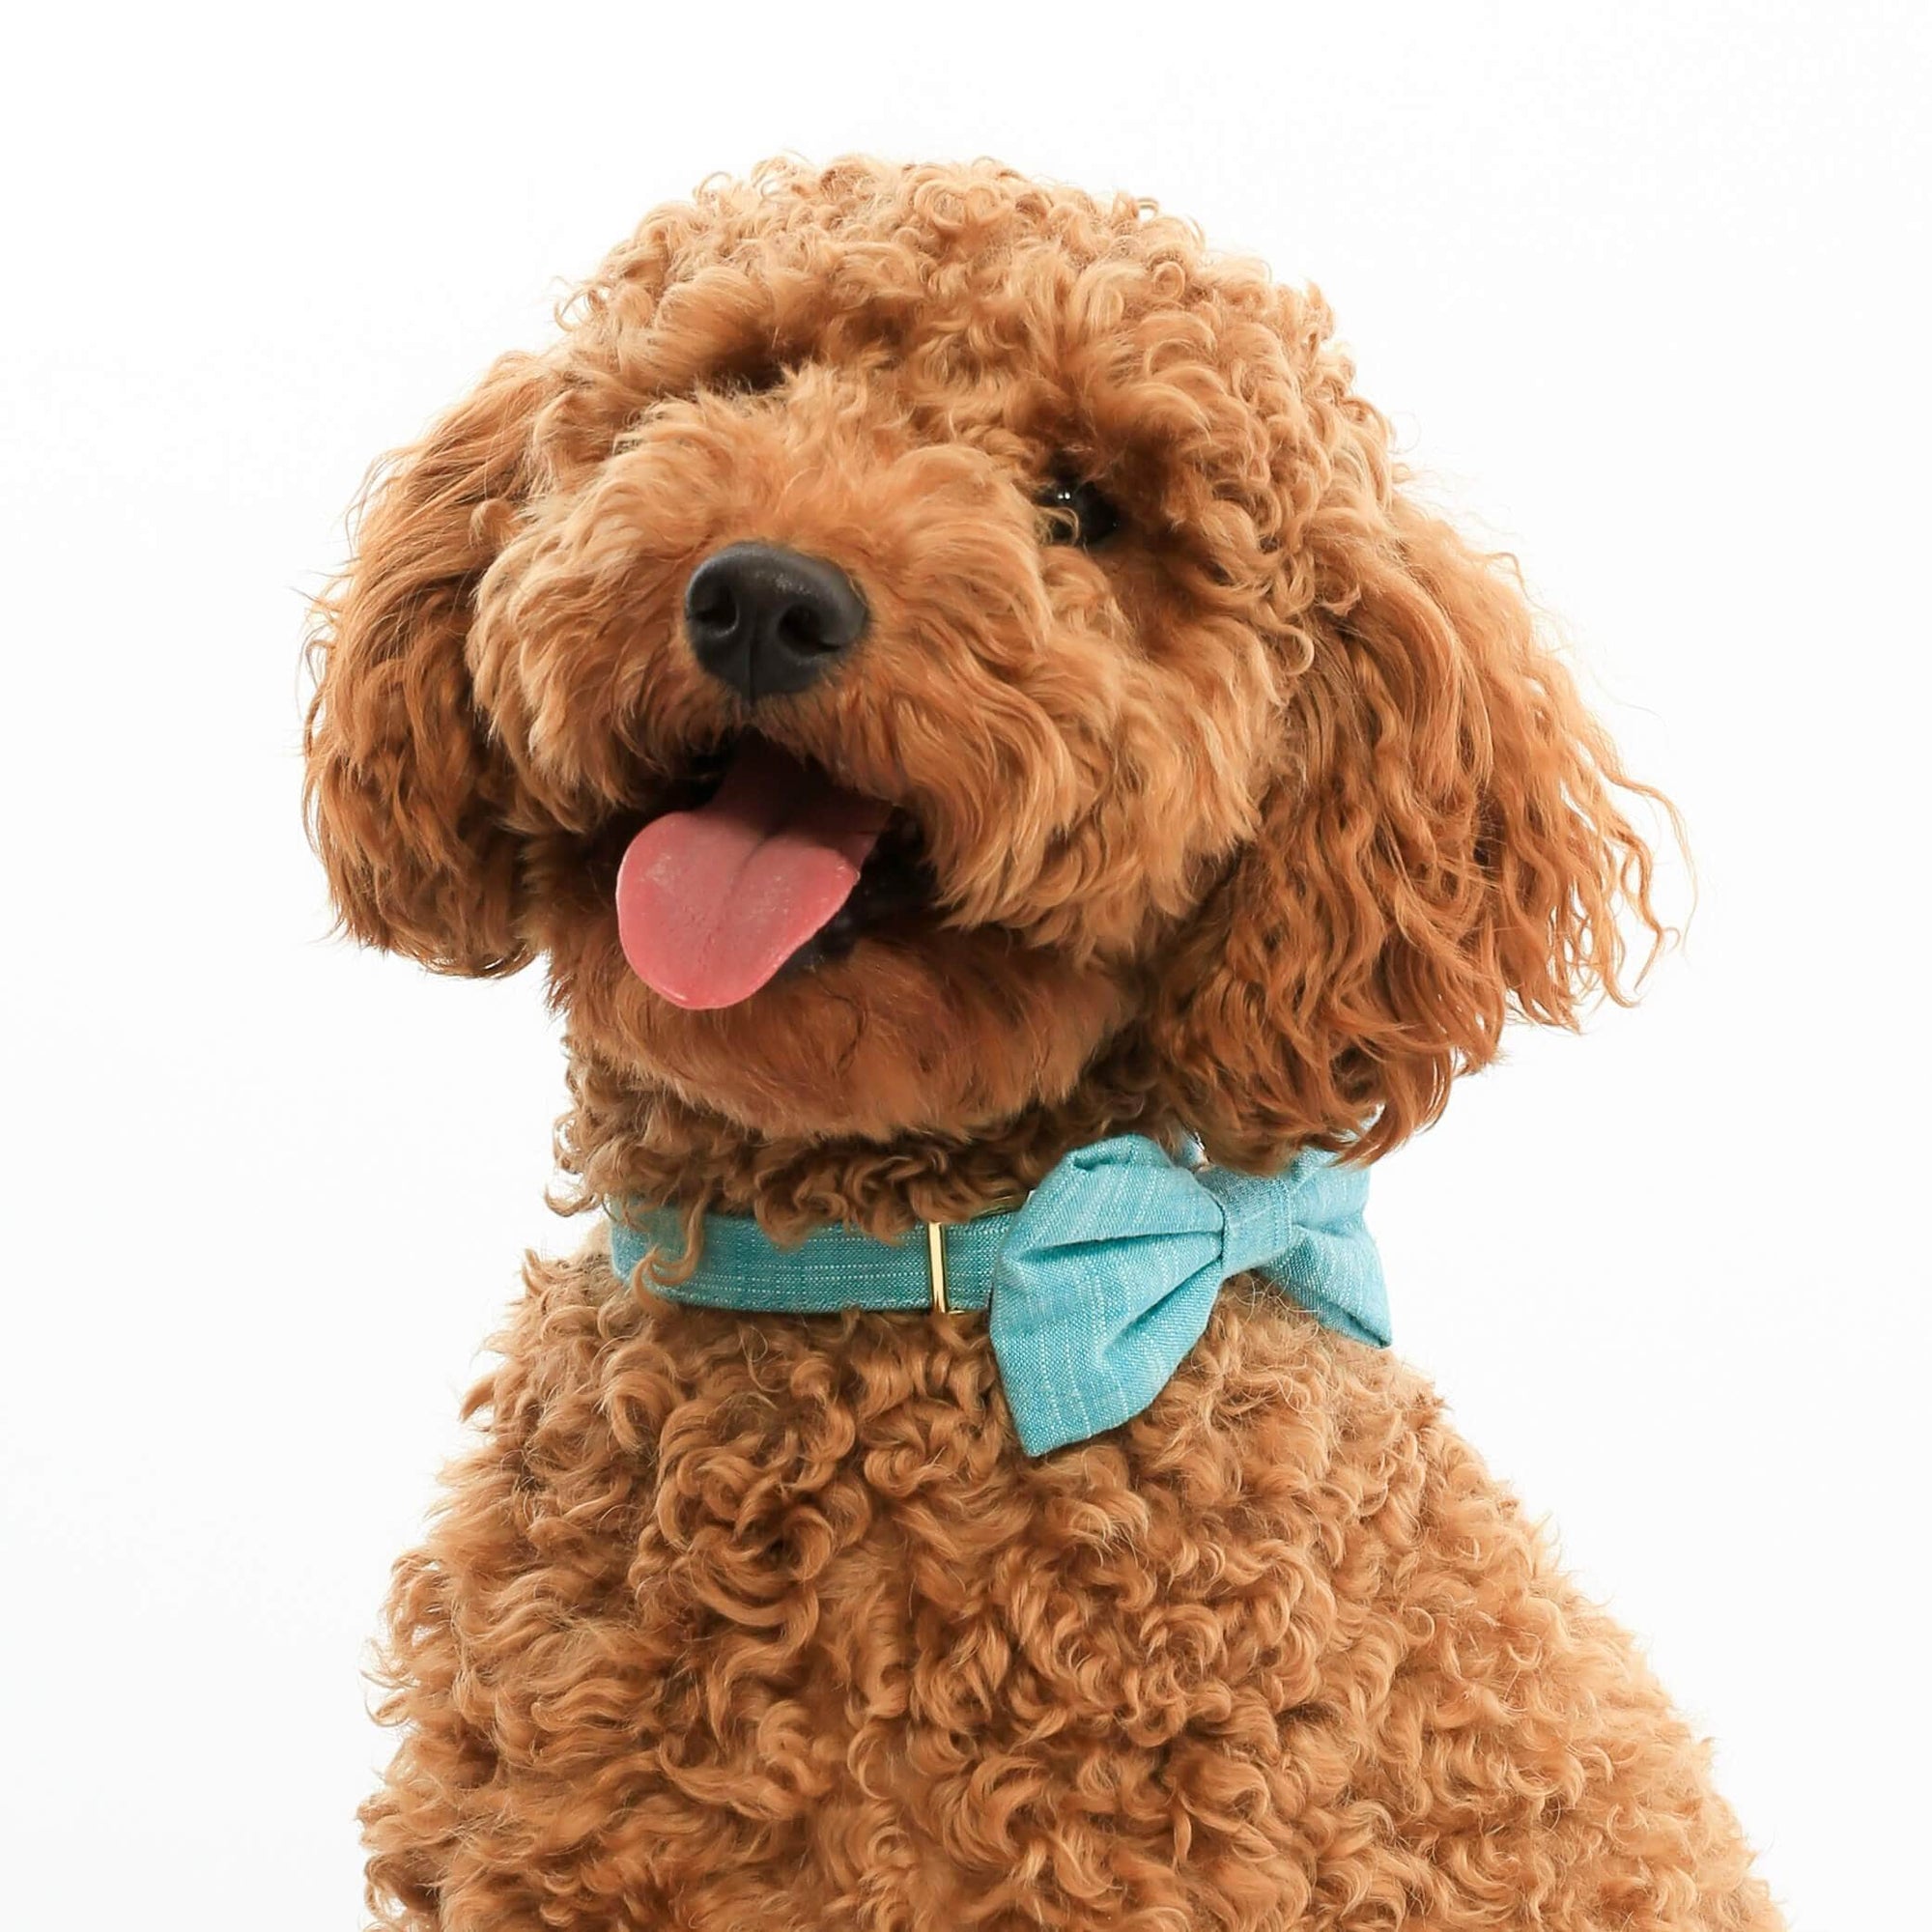 dog bow ties and bandanas